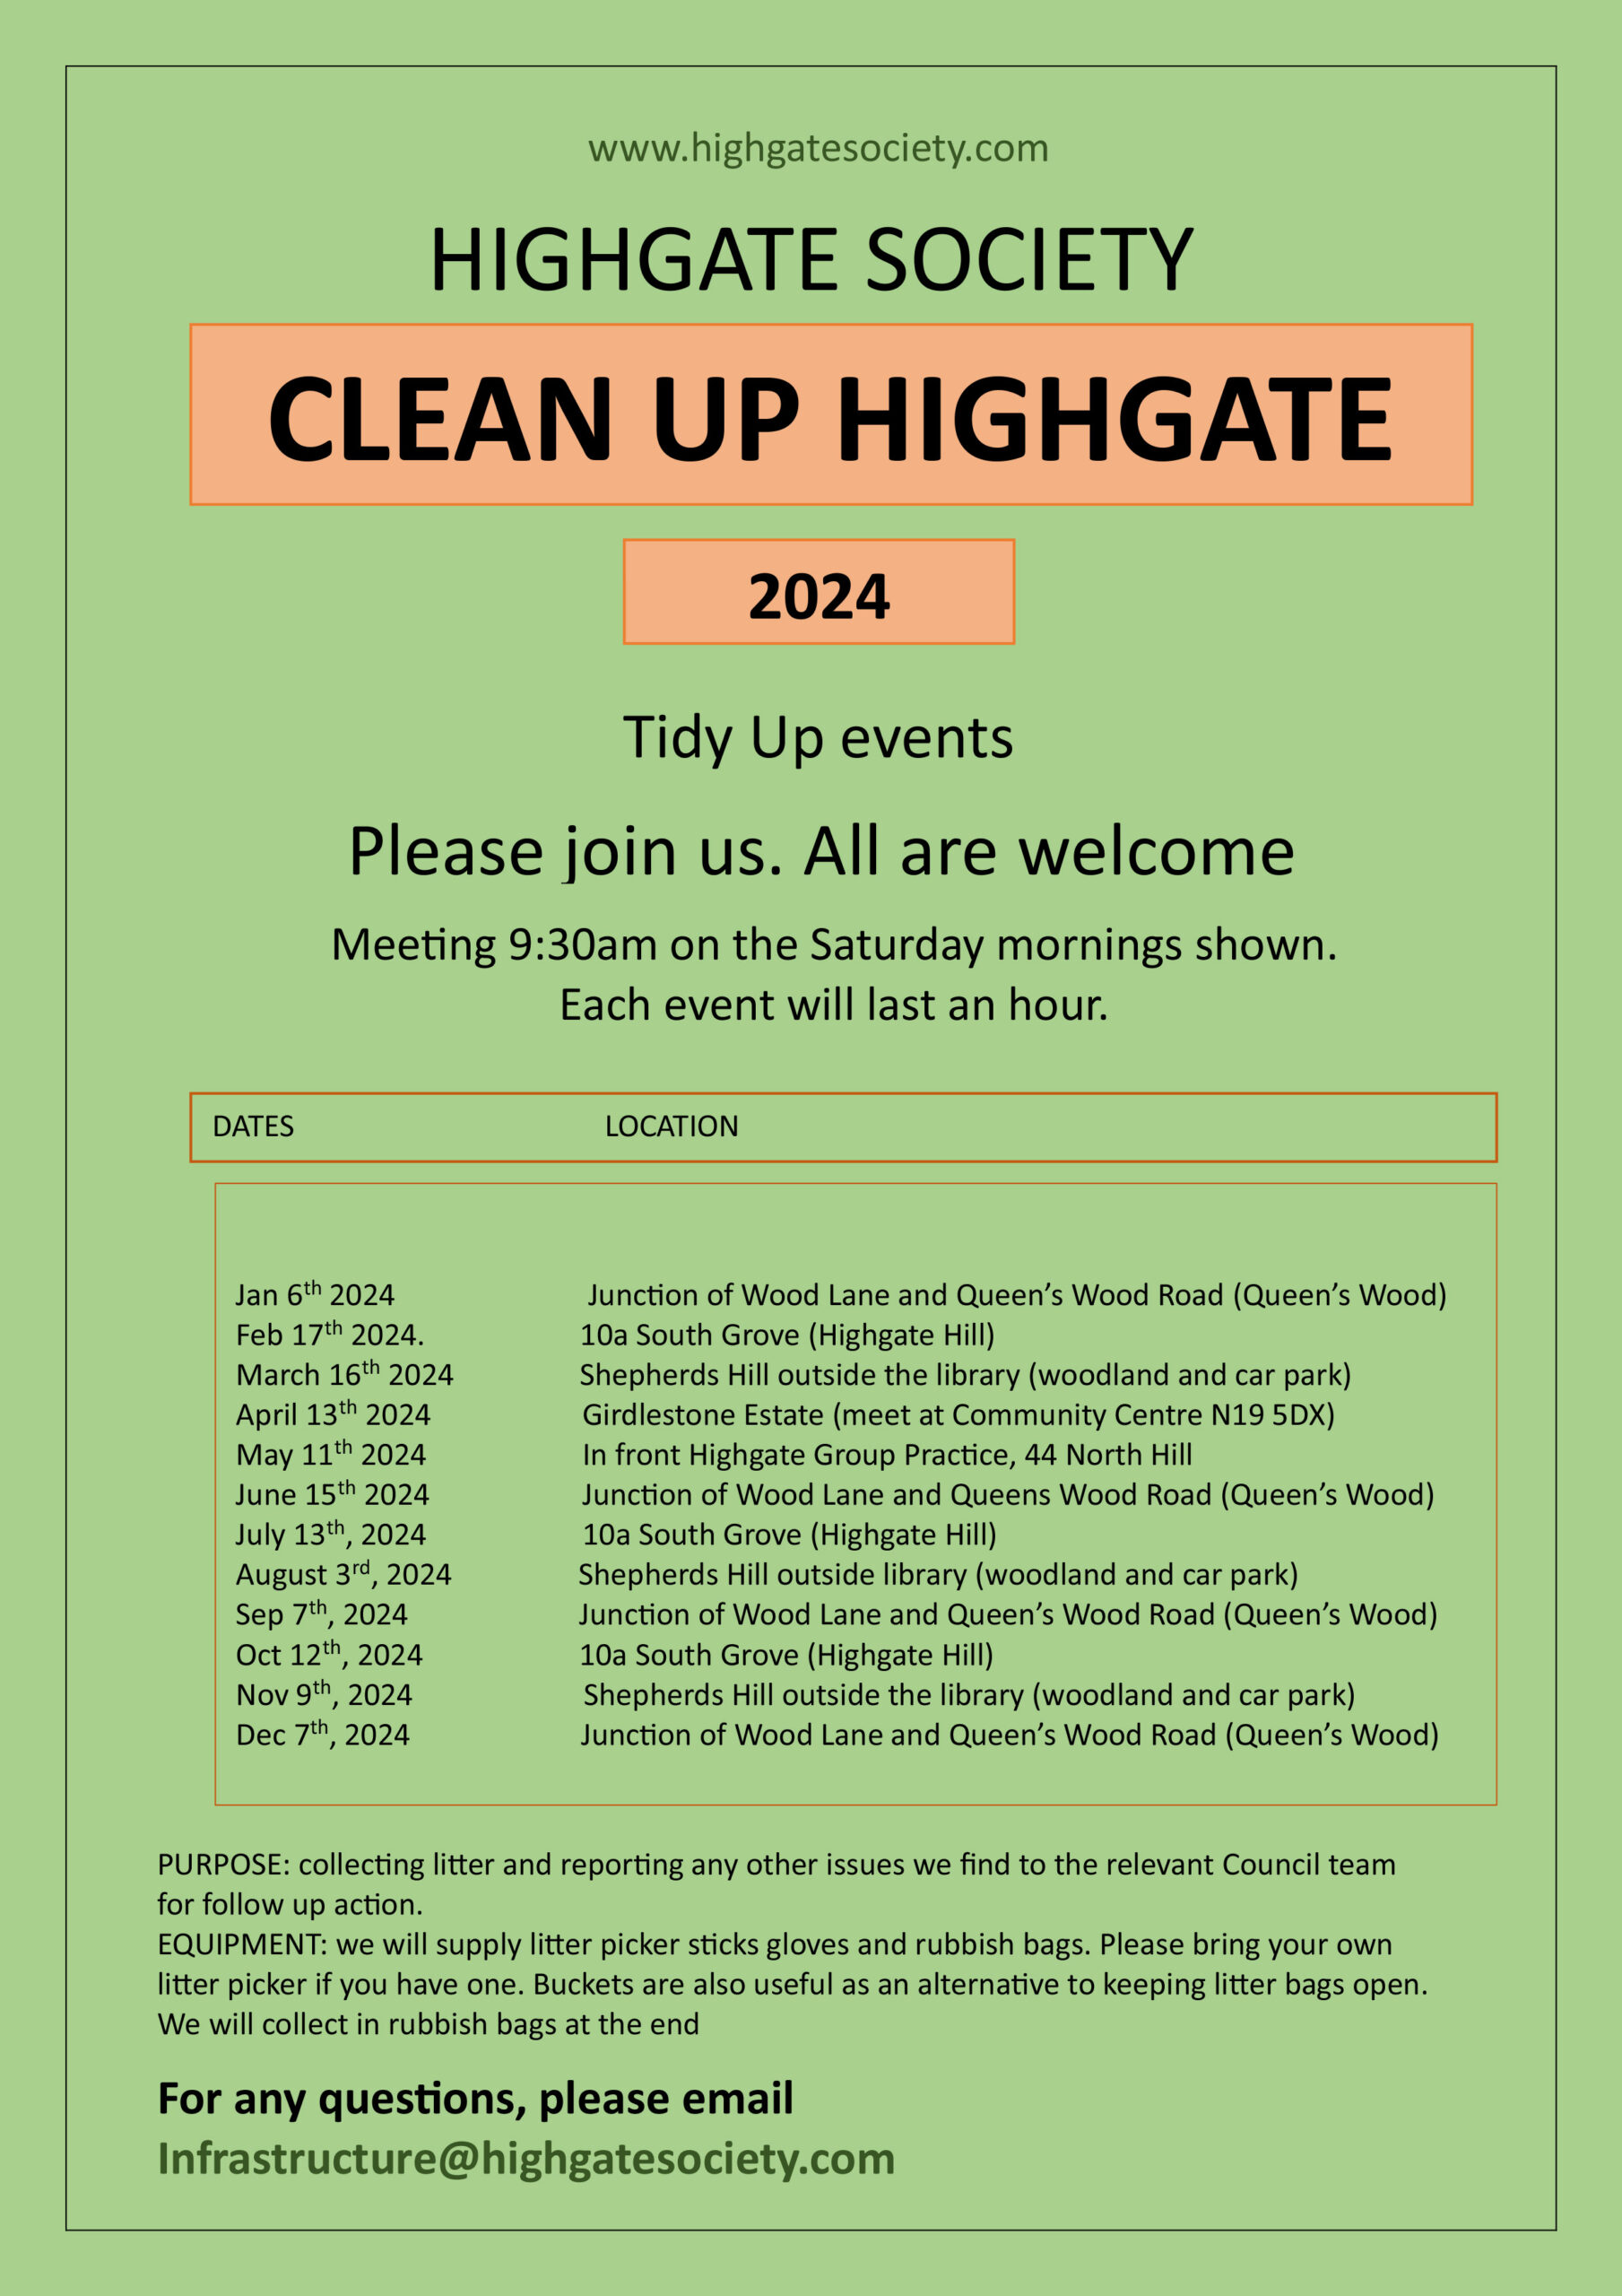 Clean Up Highgate @ Highgate Society